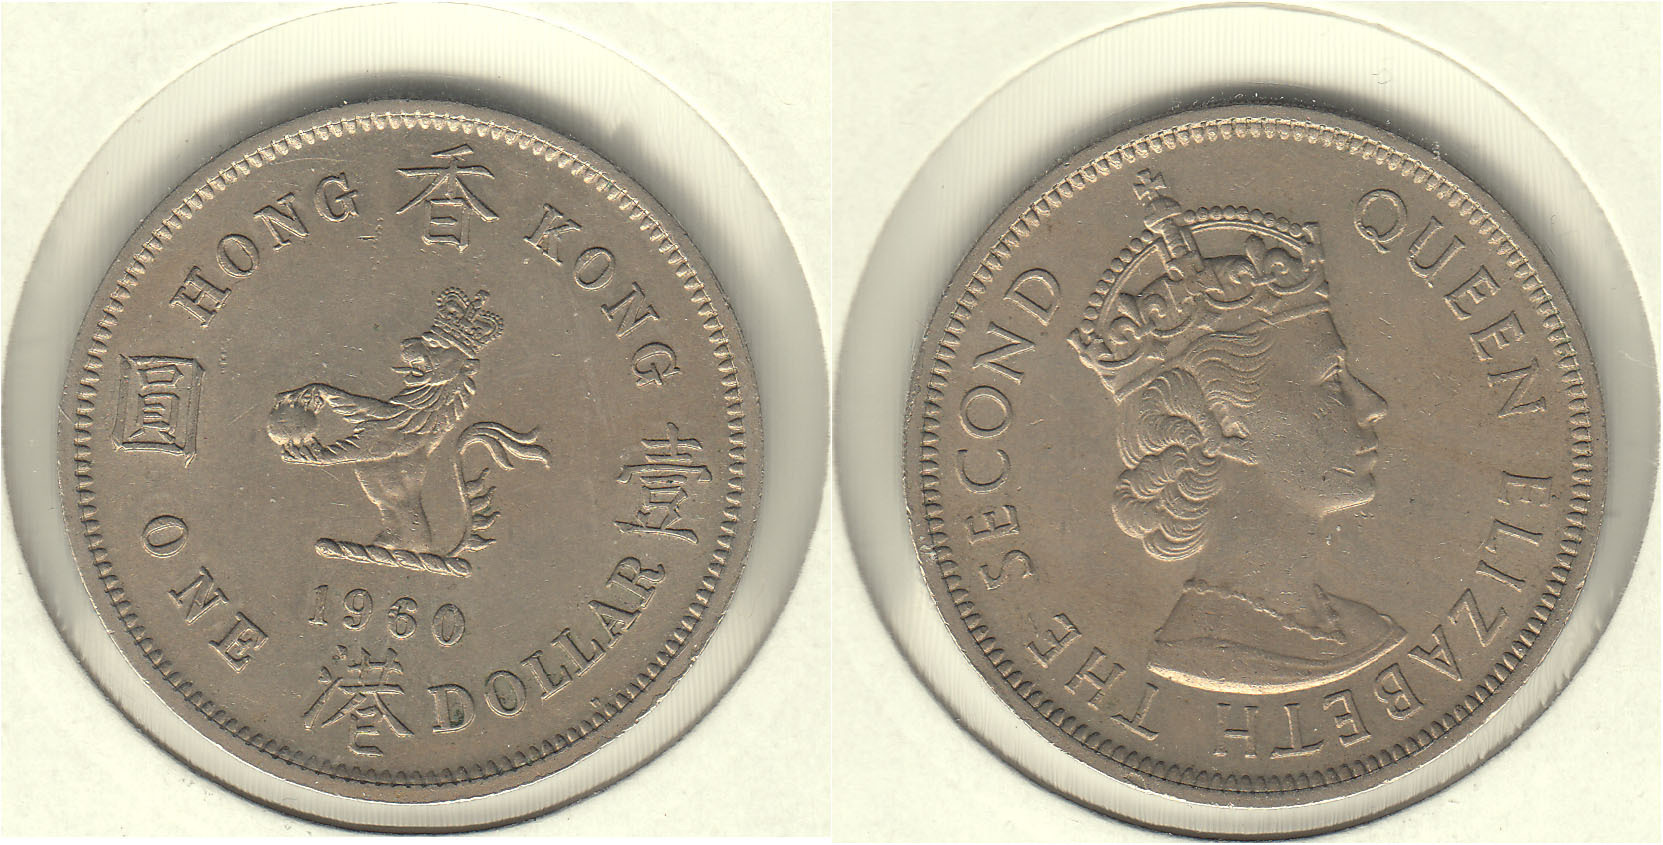 HONG KONG. 1 DOLAR (DOLLAR) DE 1960.